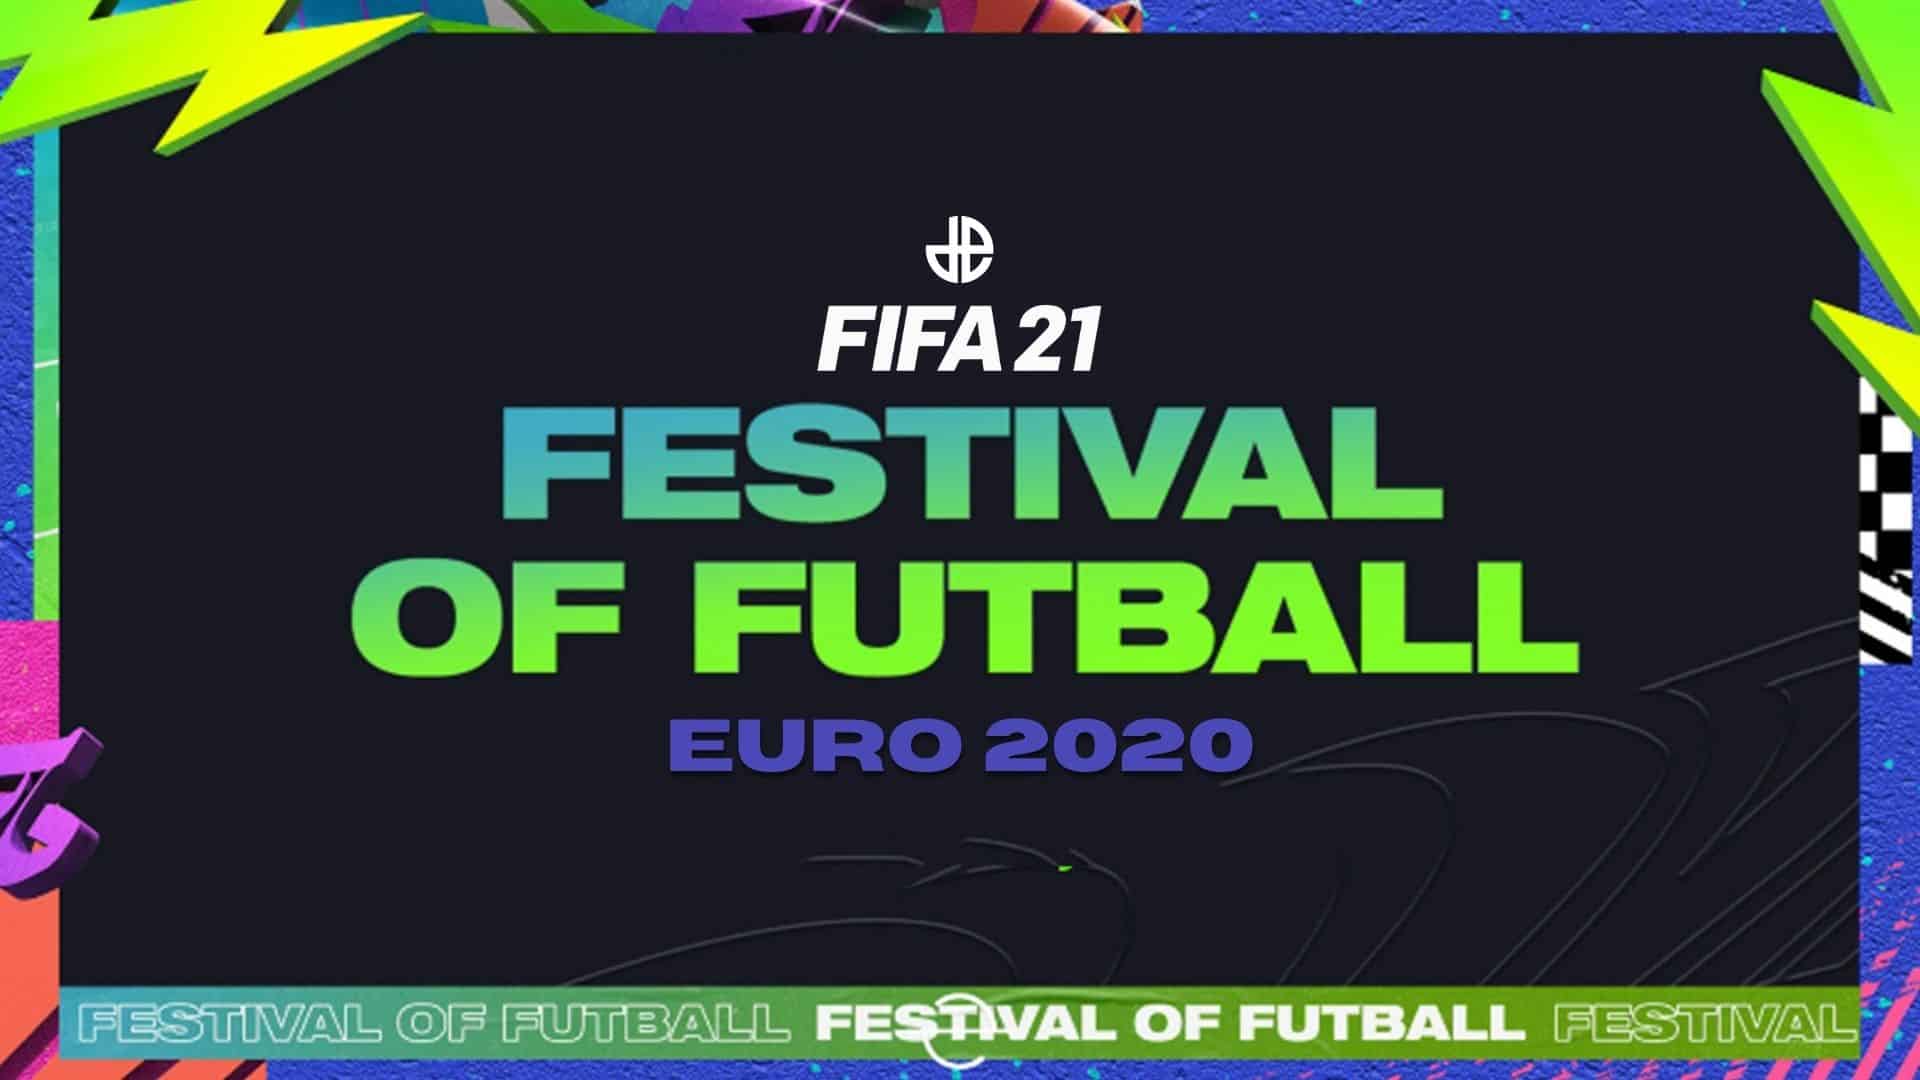 fifa 21 festival of futball euro 2020 fut countdown promo start time predictions more